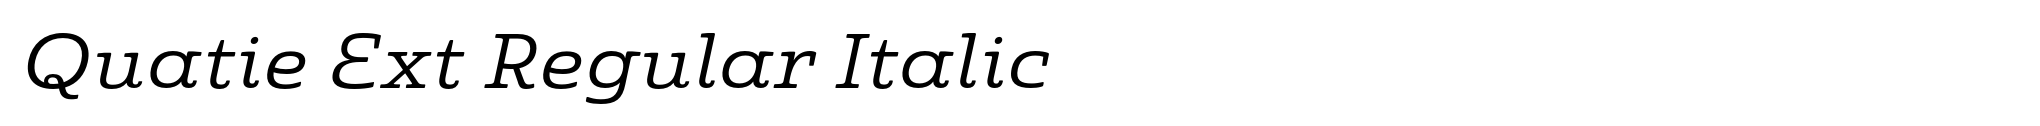 Quatie Ext Regular Italic image